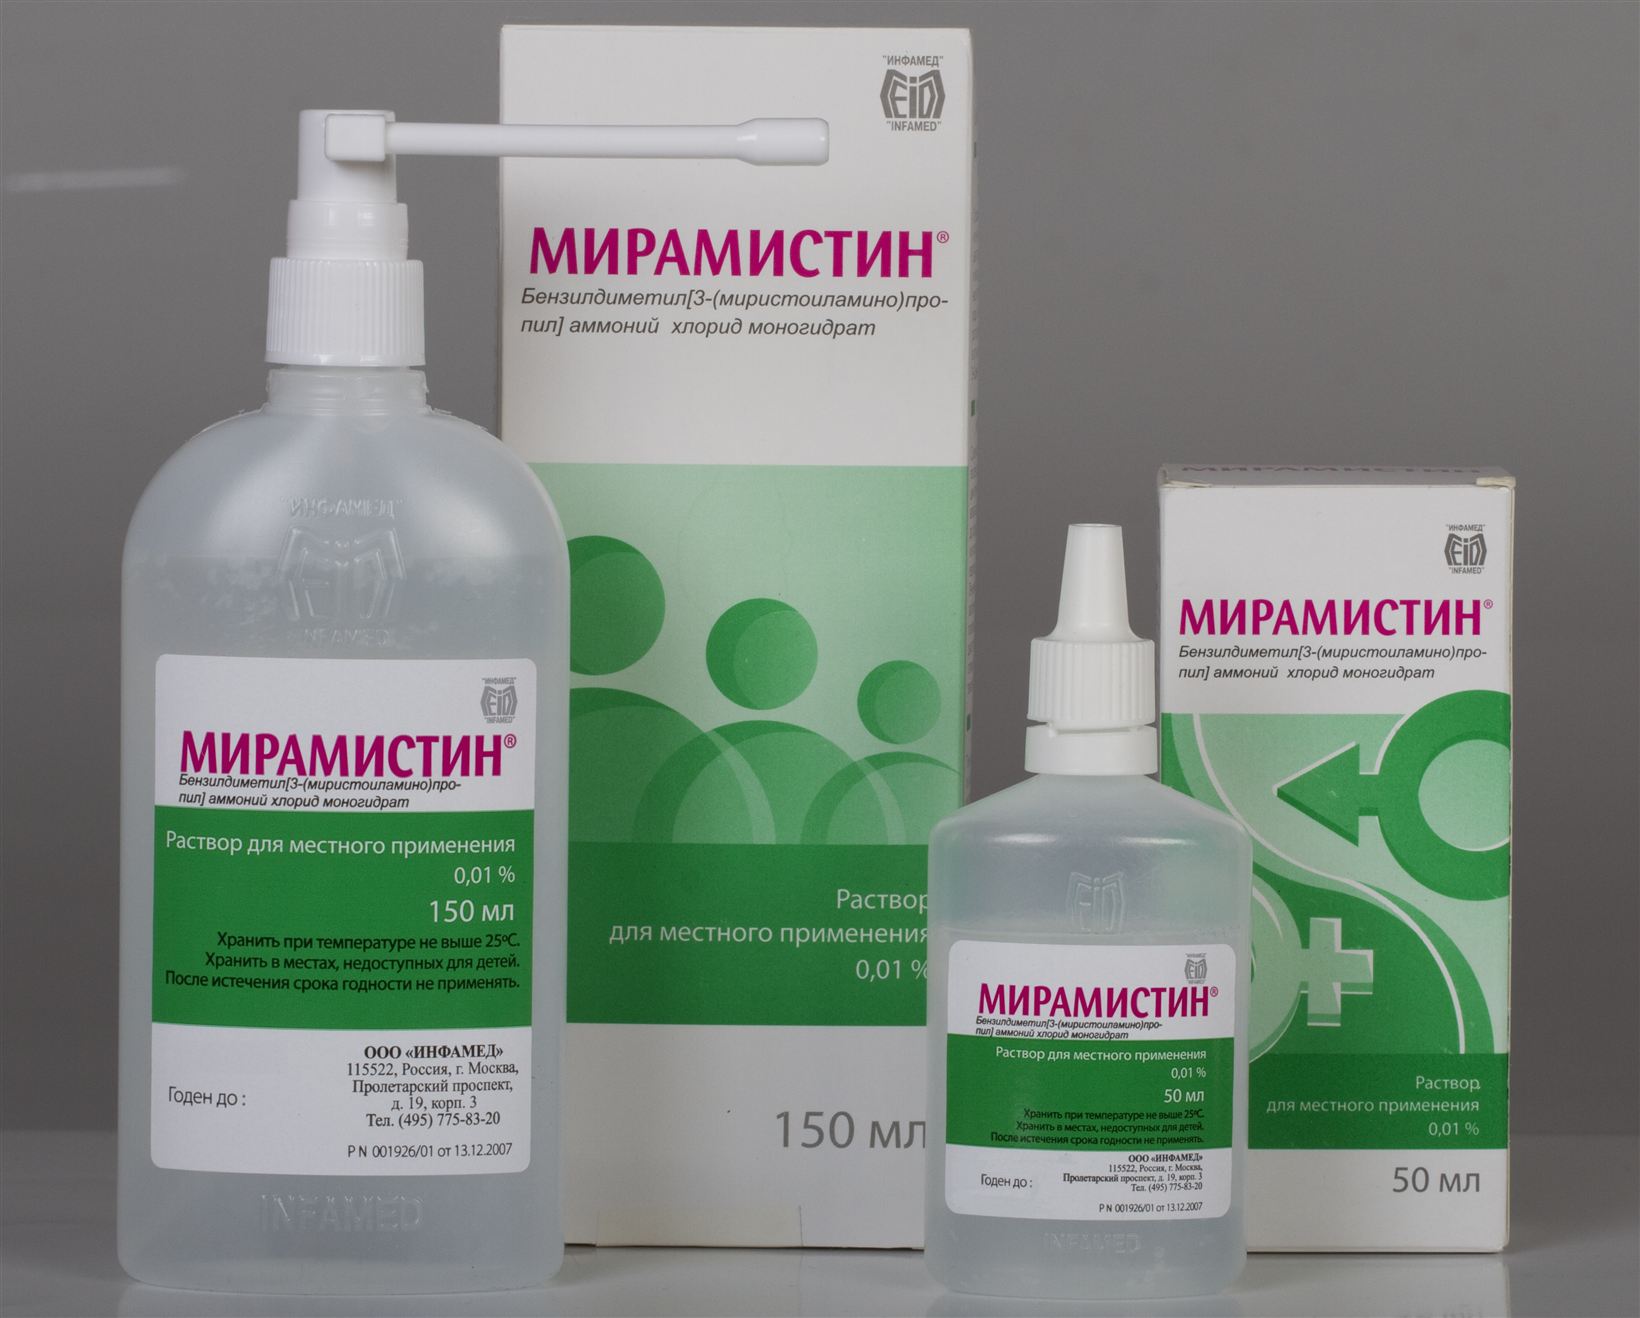  Мирамистин - Защита от венерологических заболеваний антисептиками